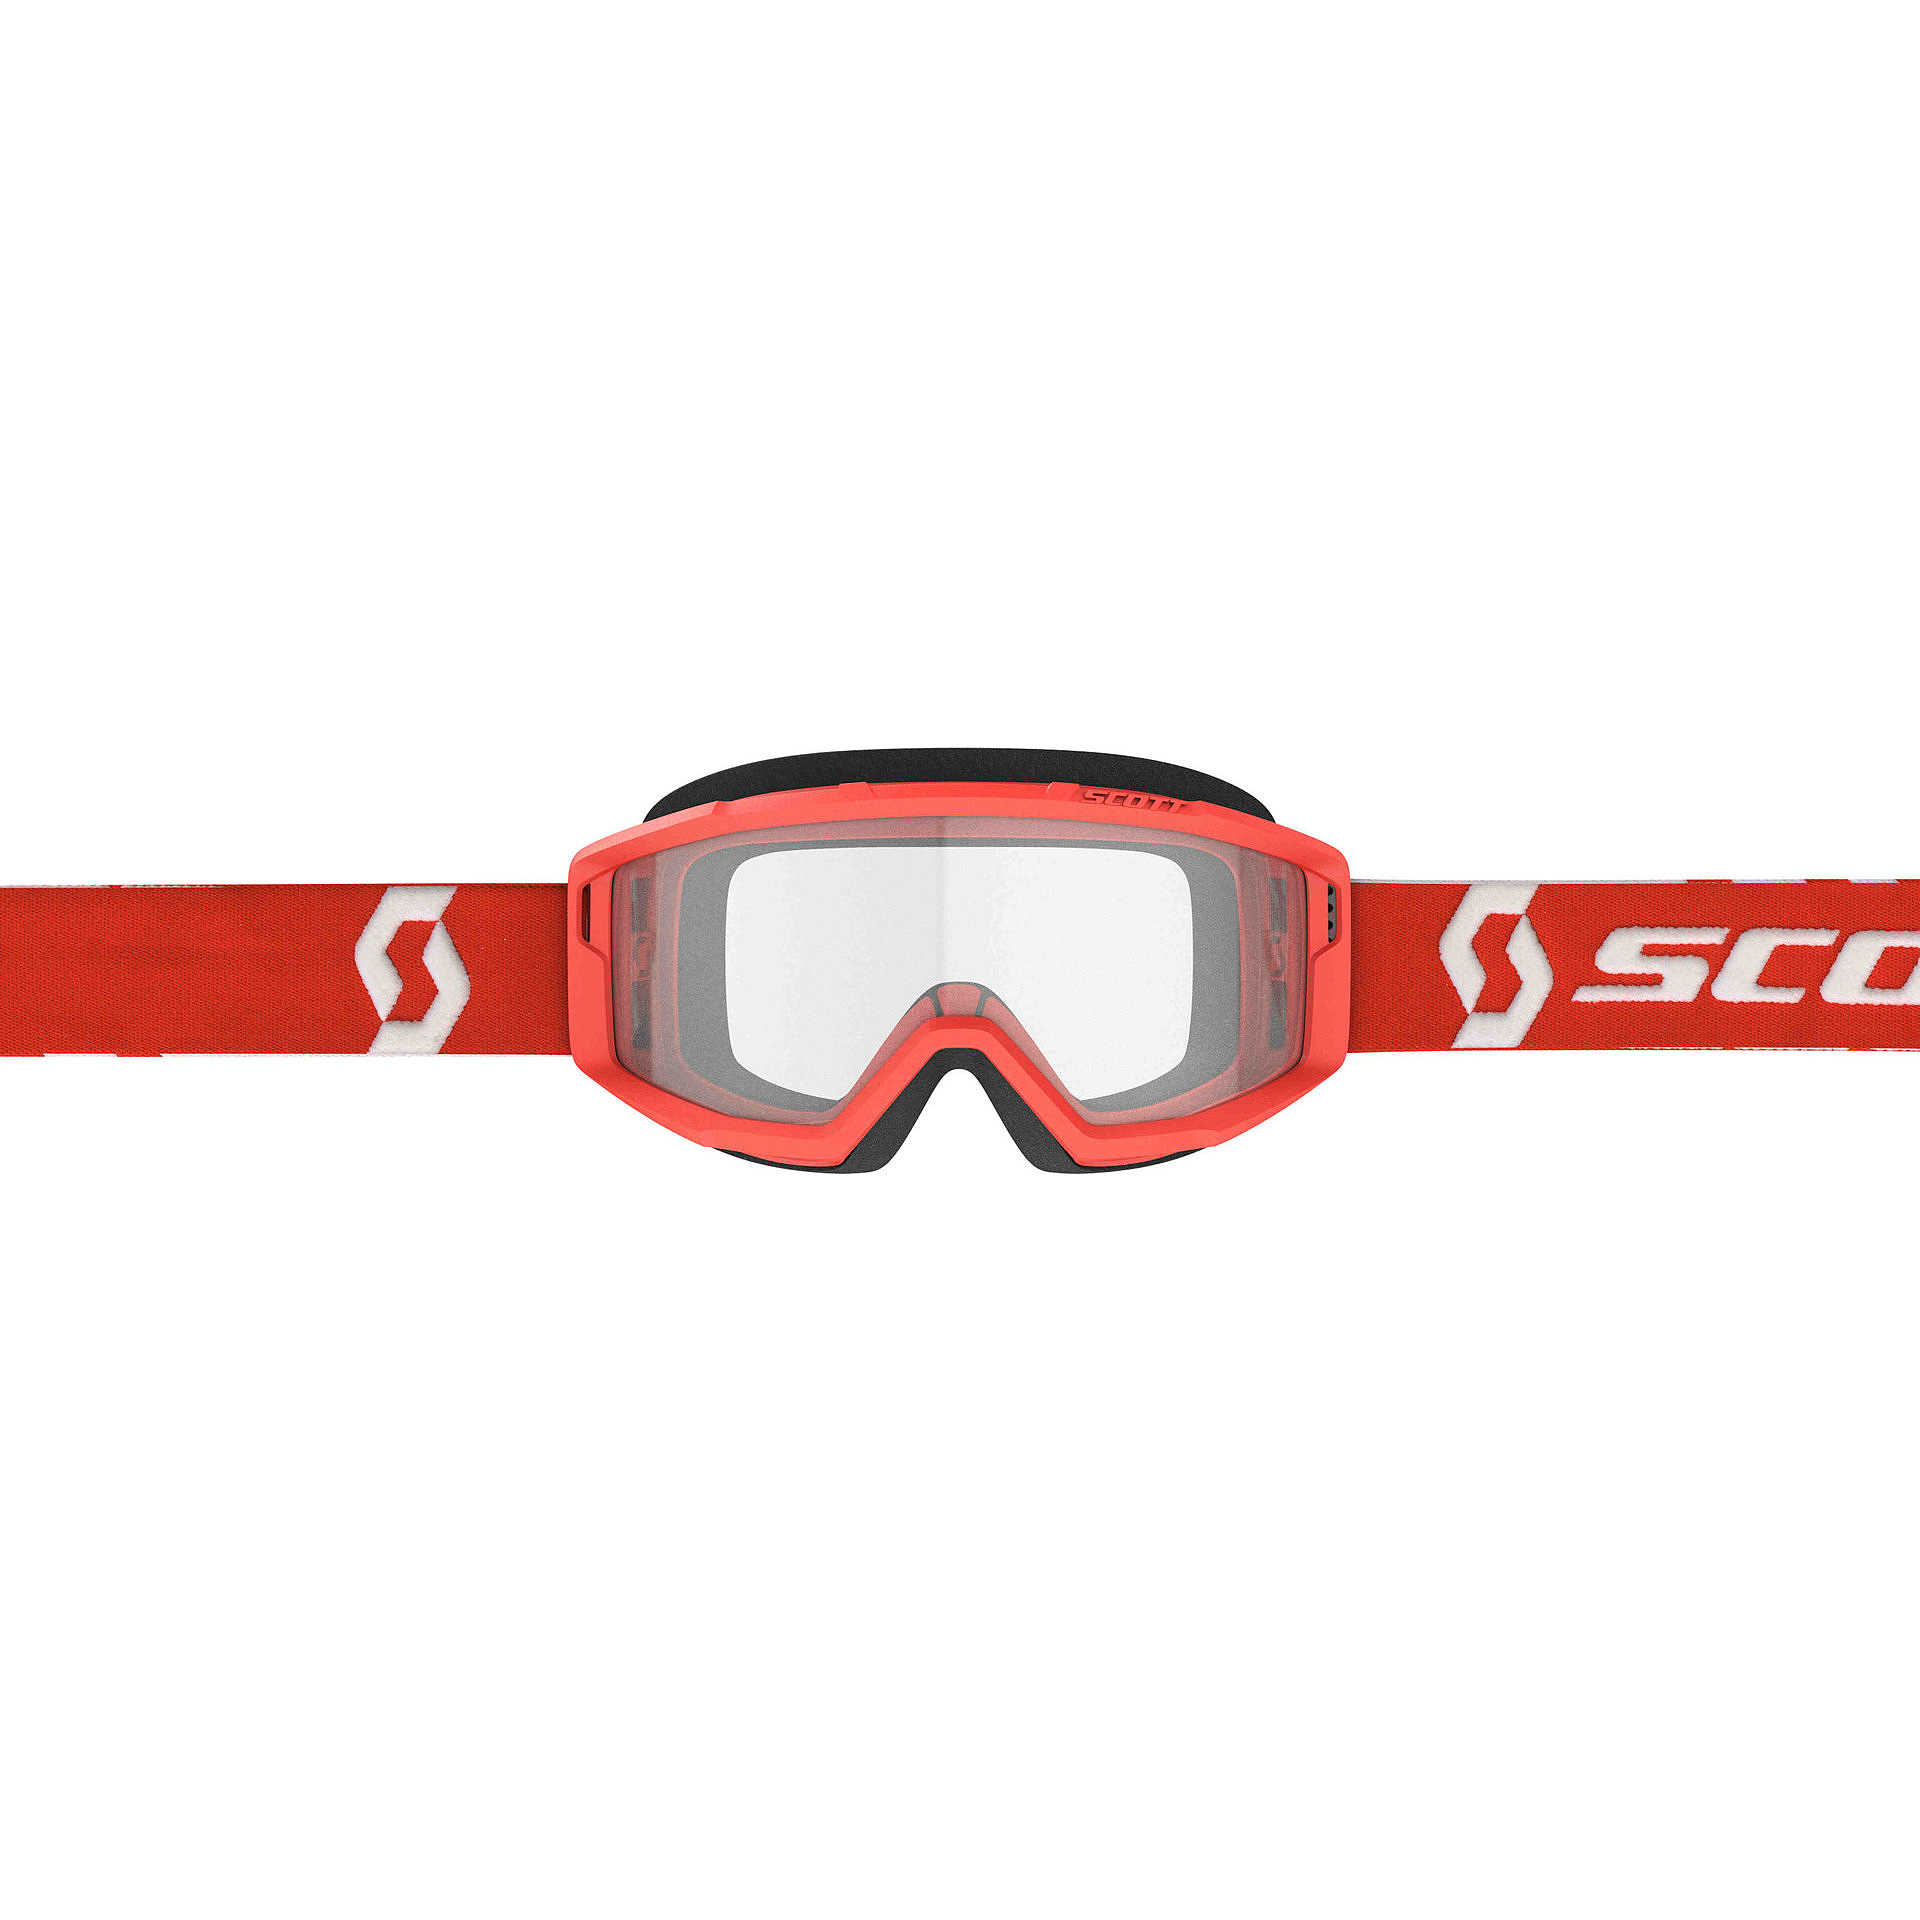 Scott Brille Primal orange/schwarz Motorradbrille Motocross Brille Schutzbrille